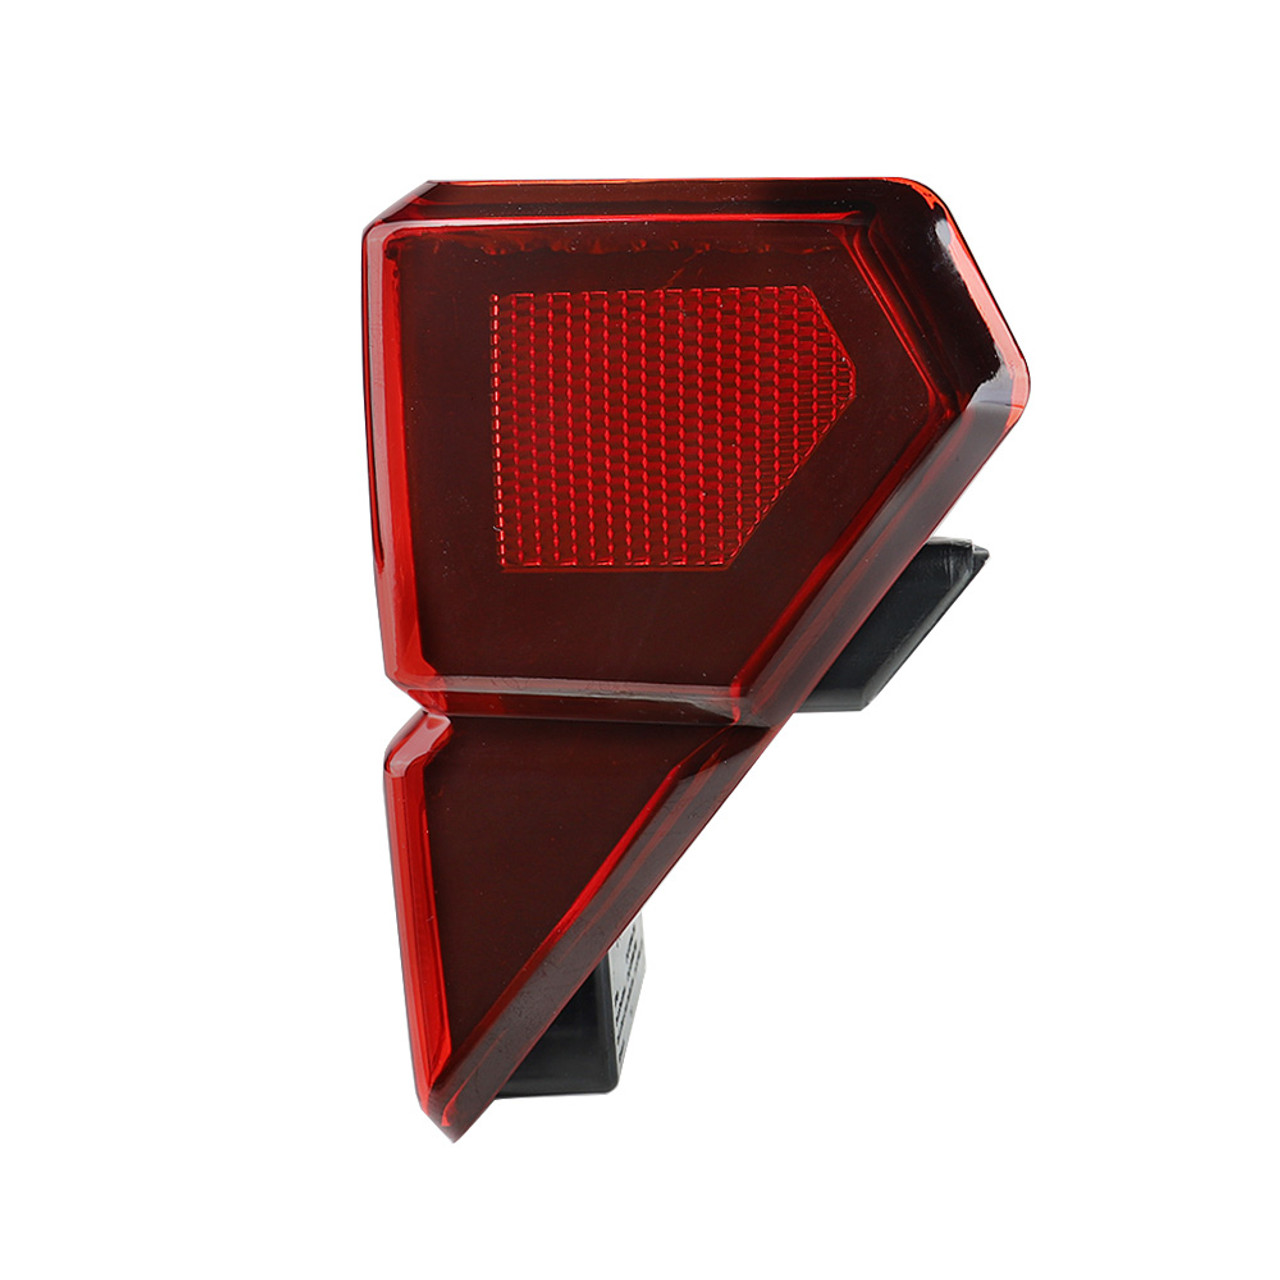 LED Tail Light Brake Light For Polaris Ranger Crew XP 1000 2018-2021 2413766 Red